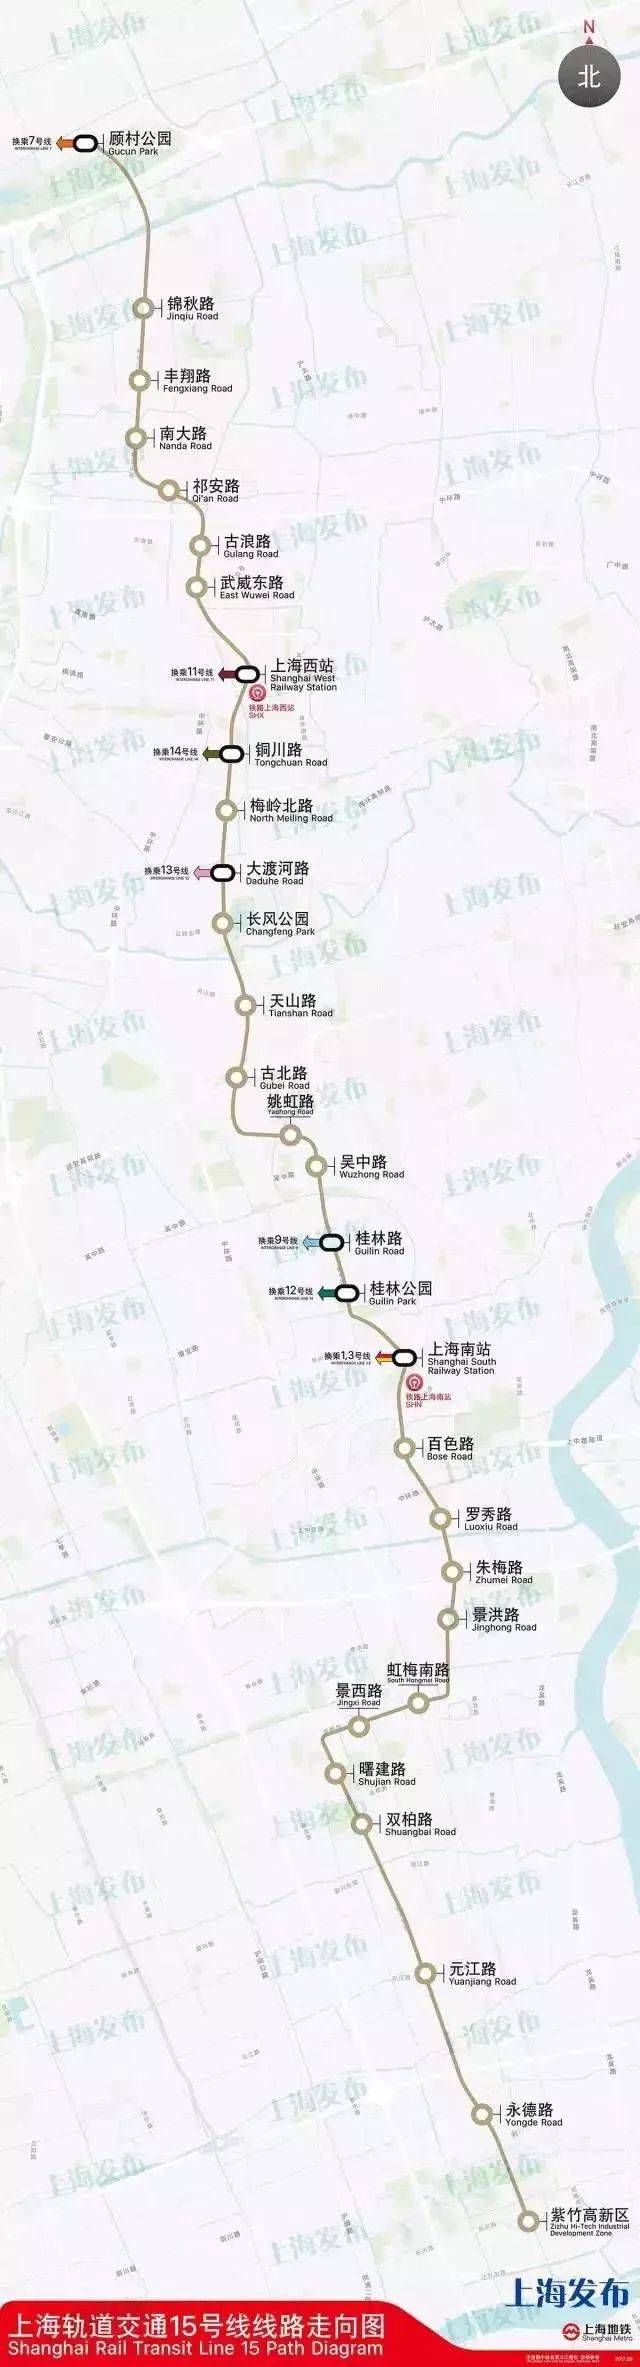 【4.22官方发布】上海宝山区,今年将新建哪些道路,工程?